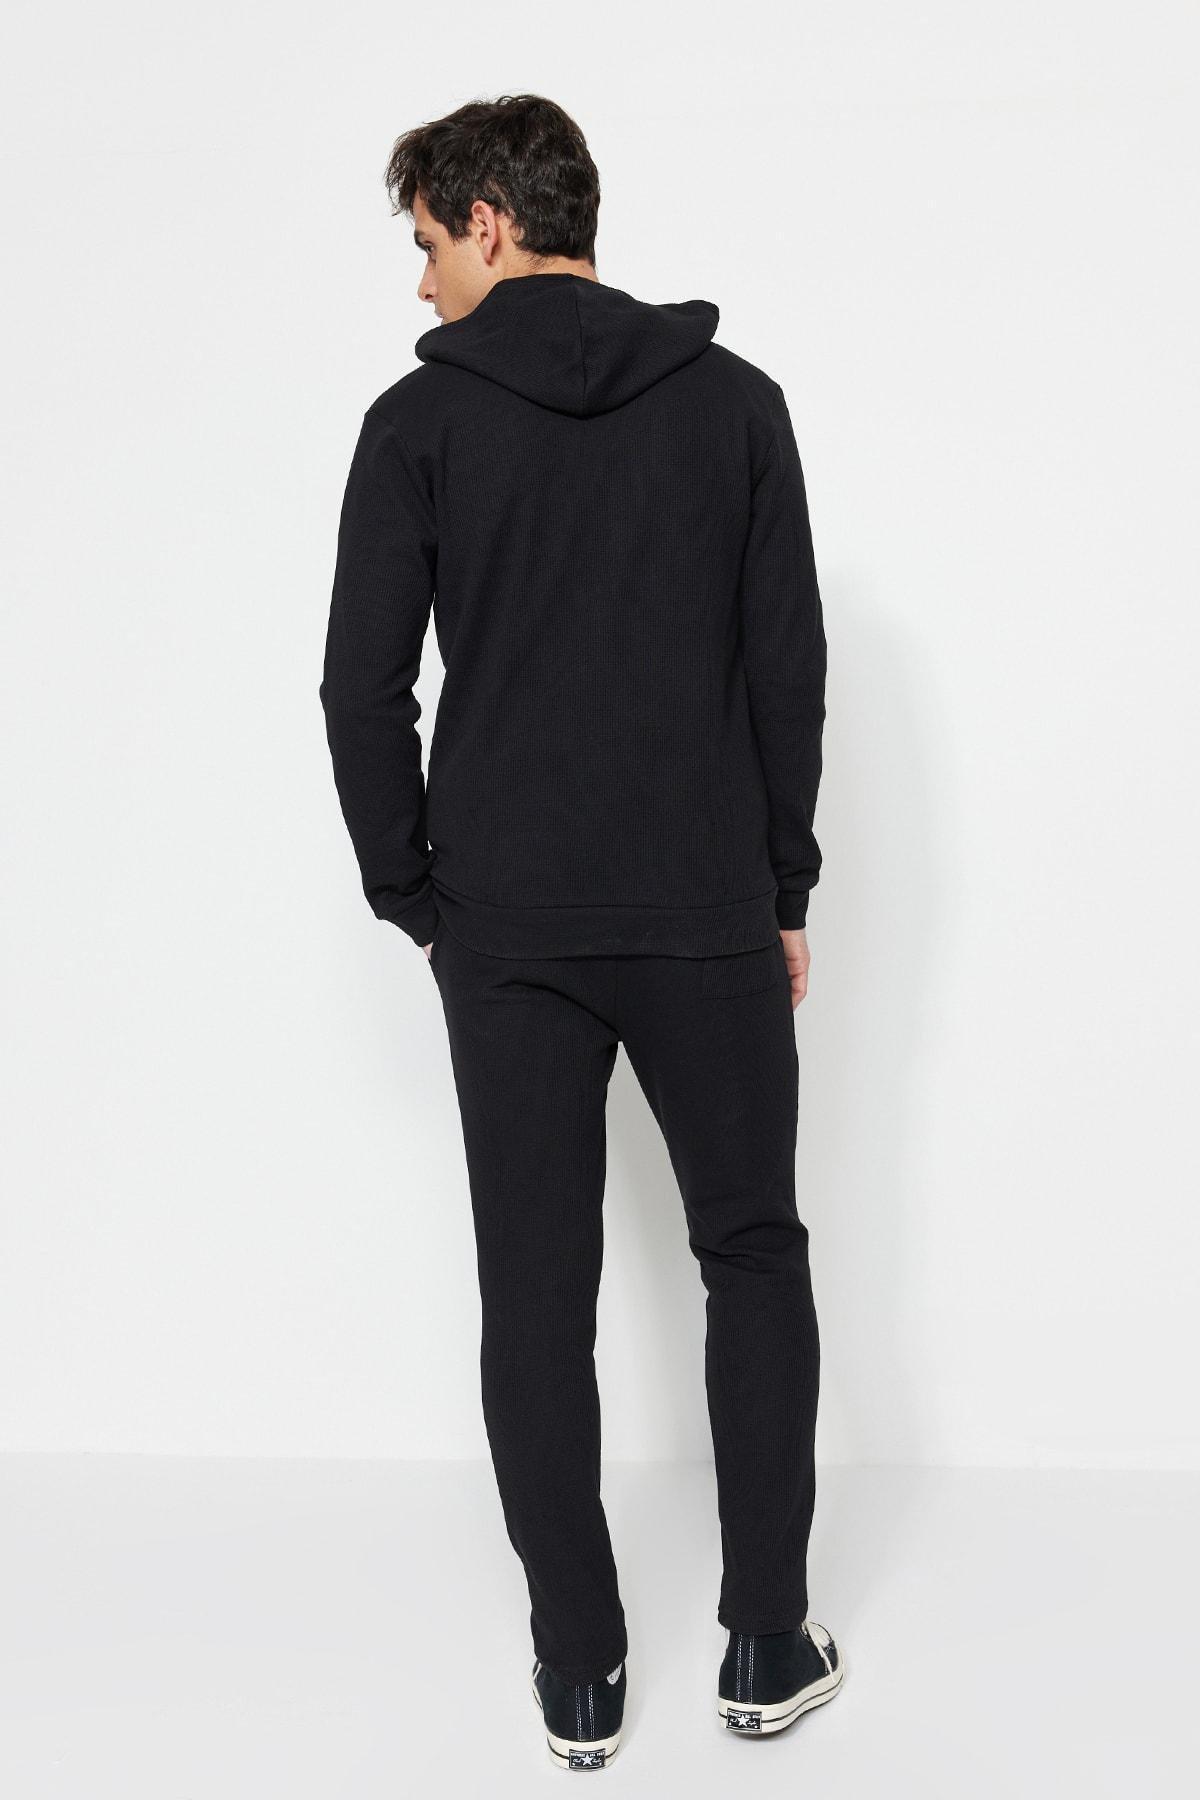 Trendyol - Black Hooded Regular Sweatsuit